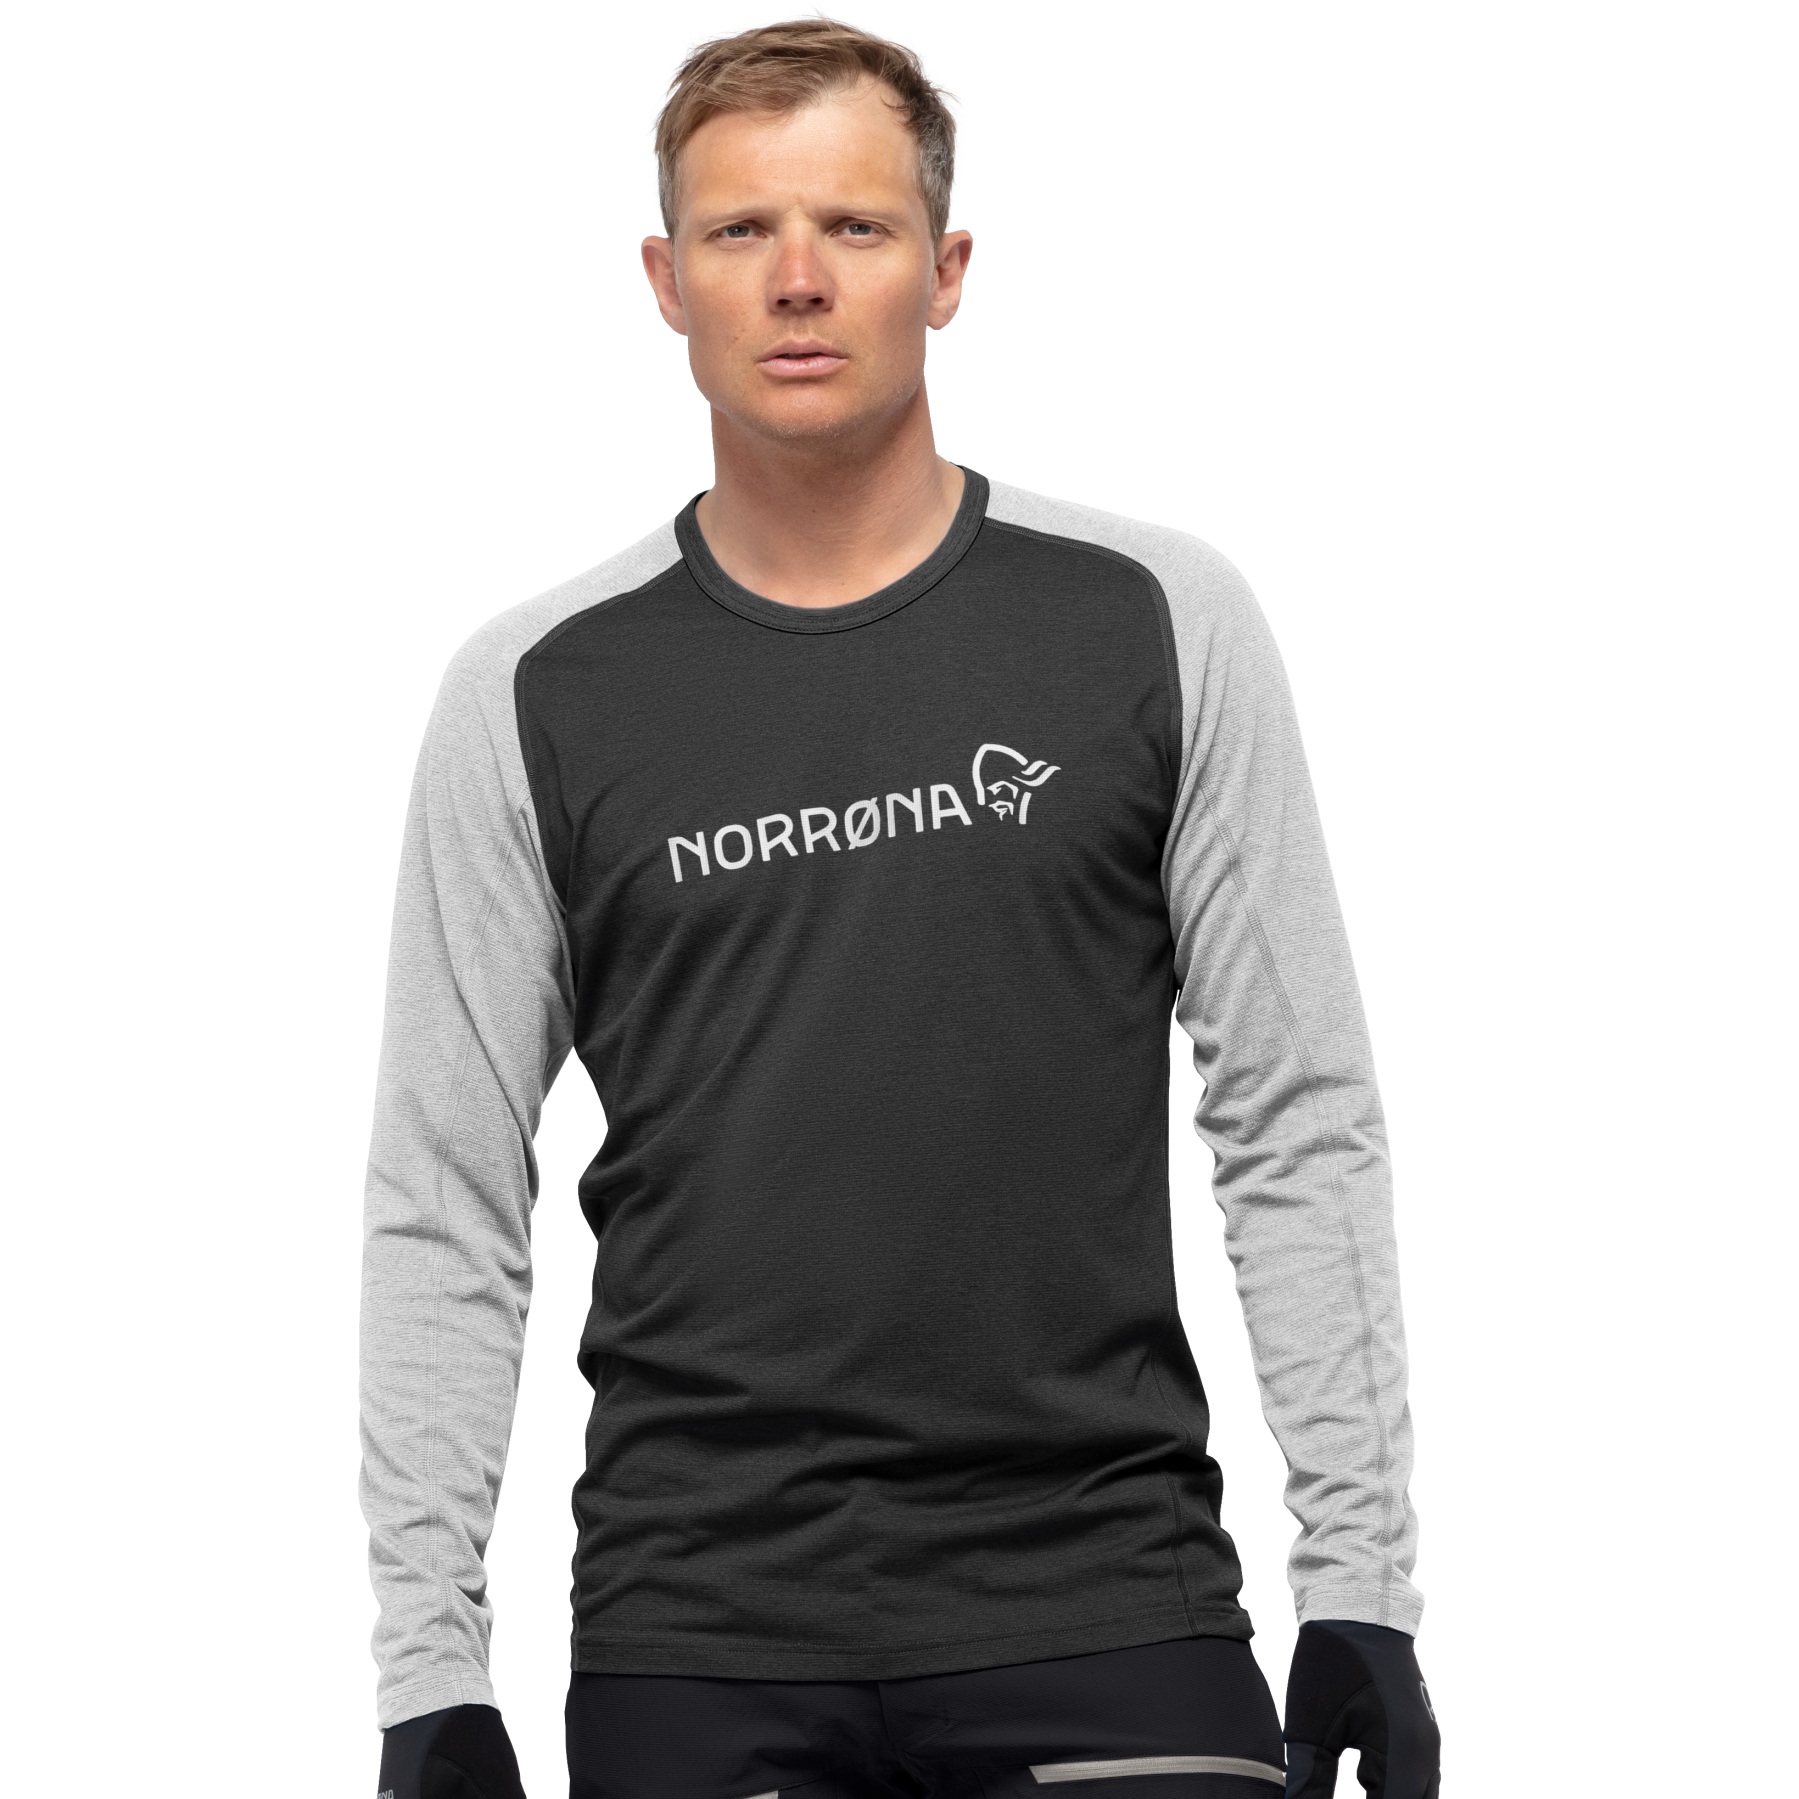 Productfoto van Norrona fjørå equaliser lightweight Shirt met Lange Mouwen Heren - Caviar/Castor Grey